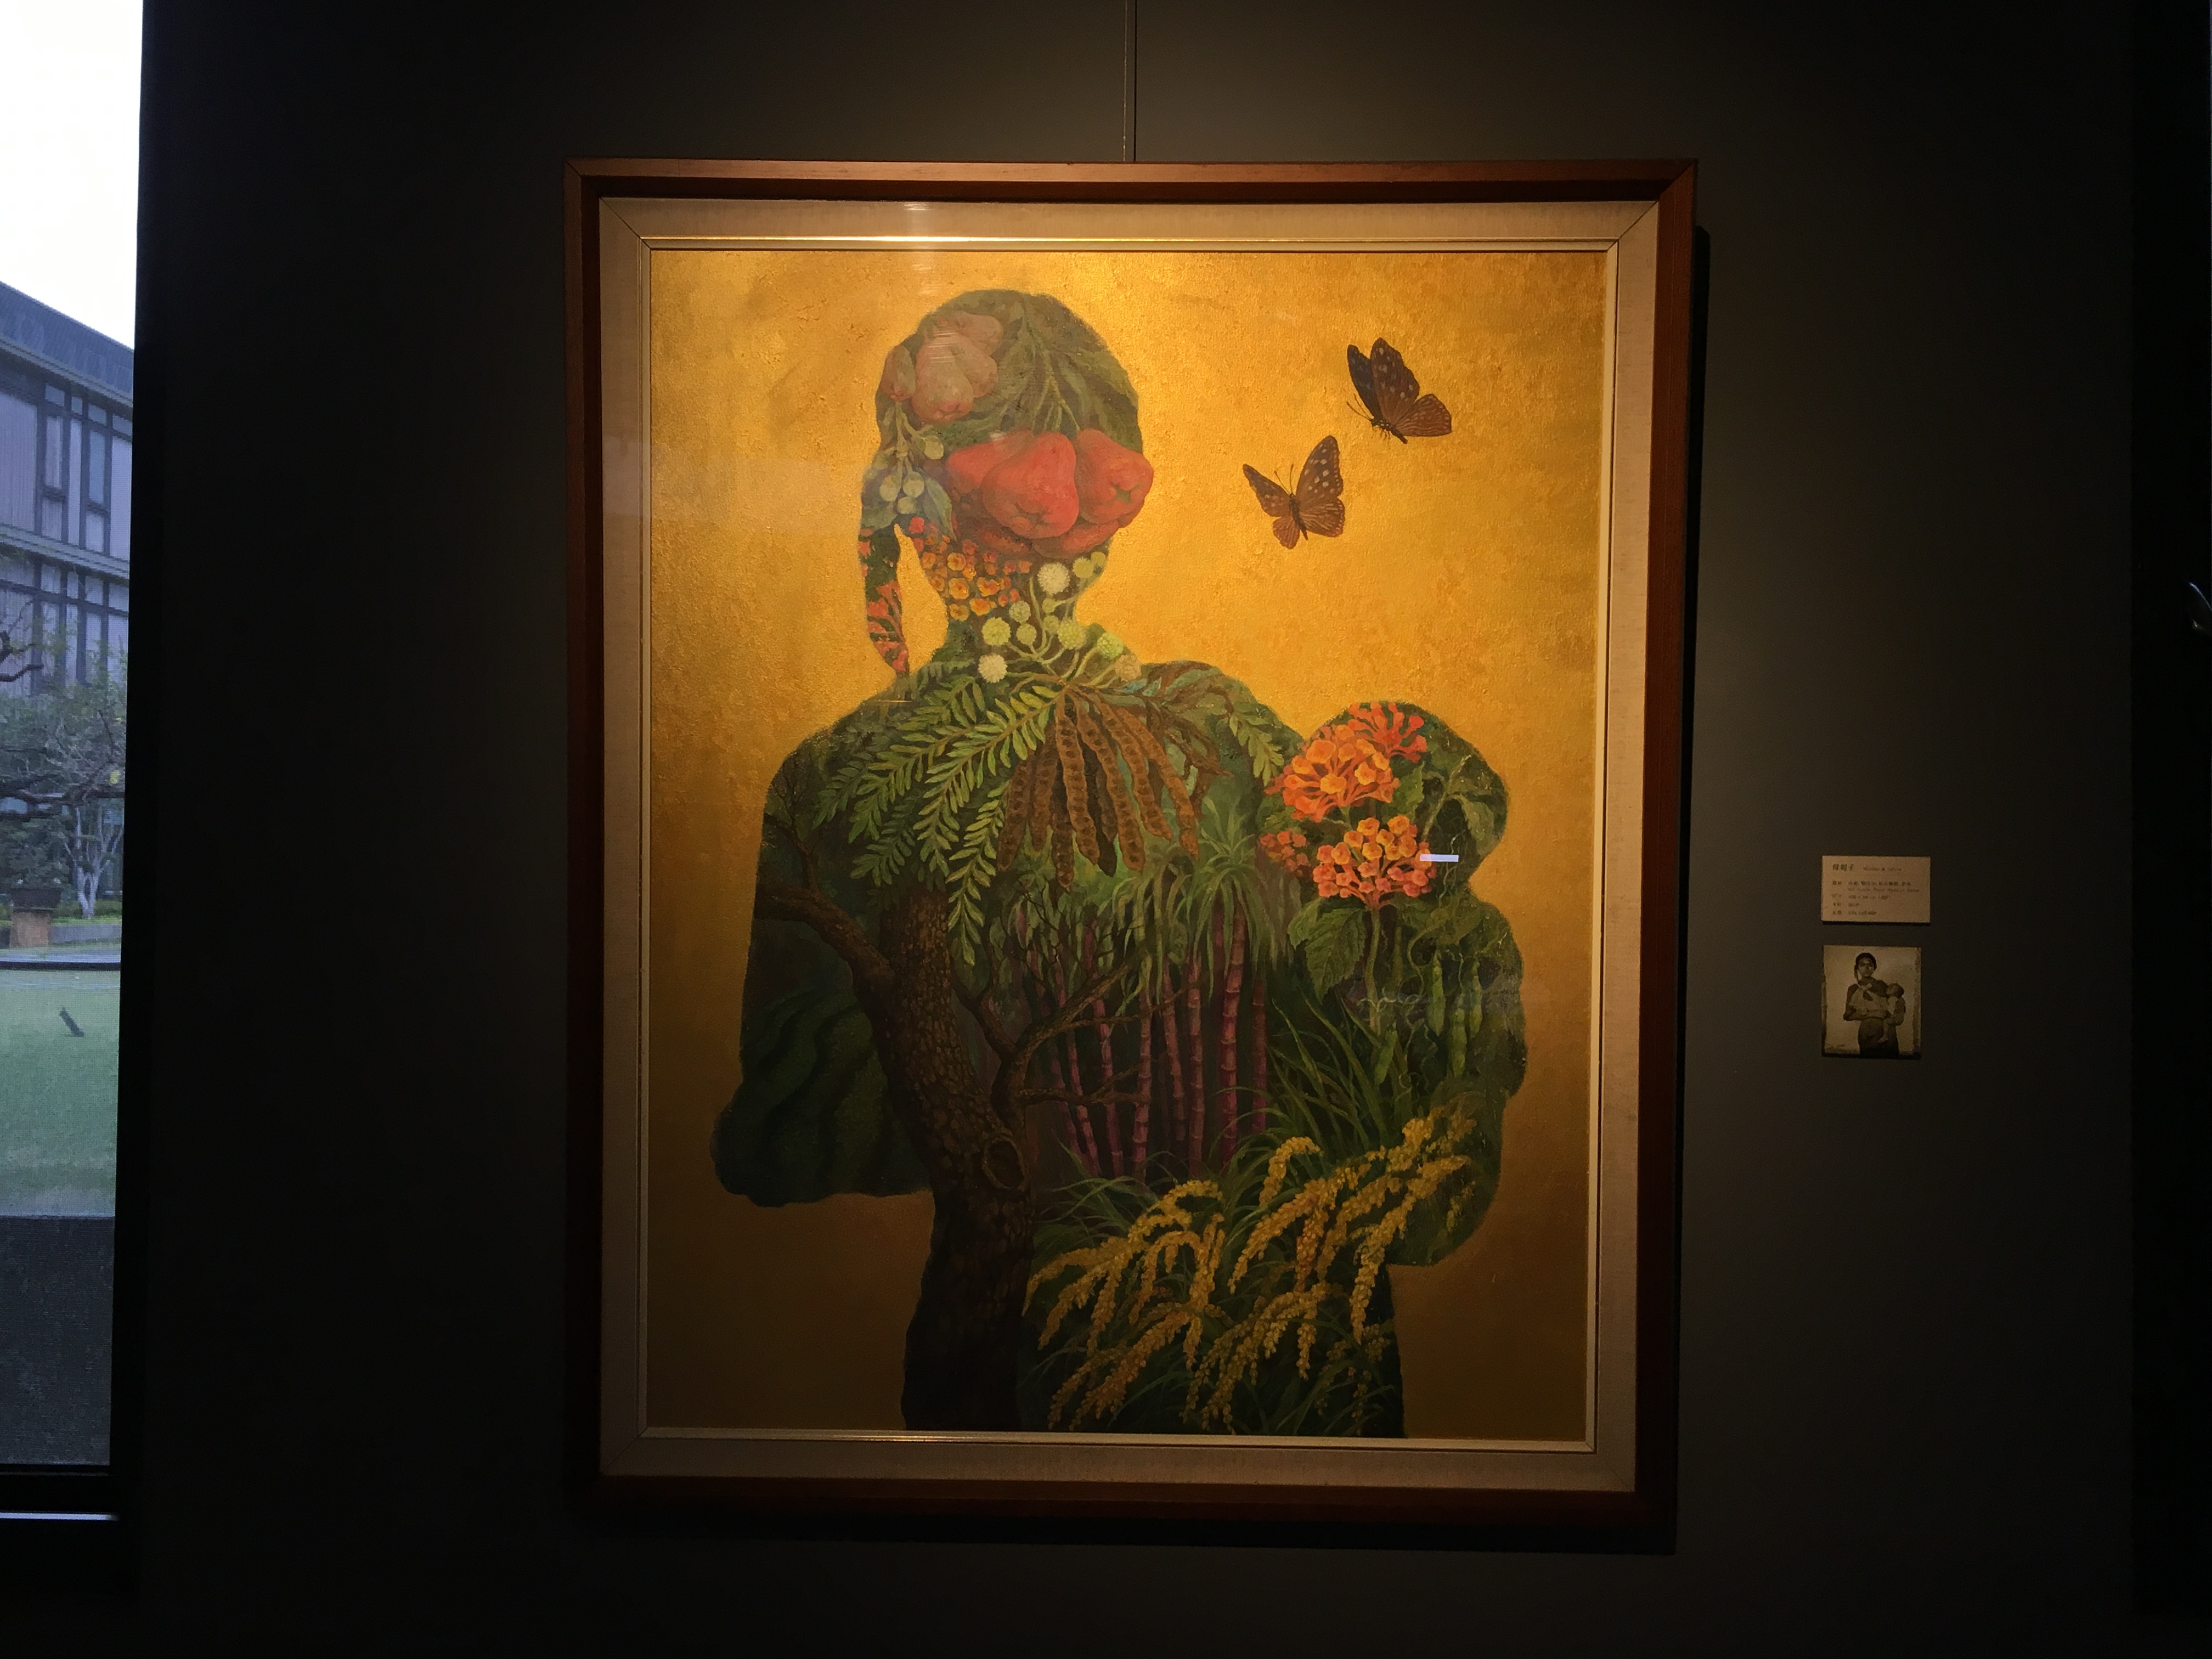 劉子平，《母與子》，100 x 80 cm，油彩、壓克力、綜合媒材、畫布，2019。